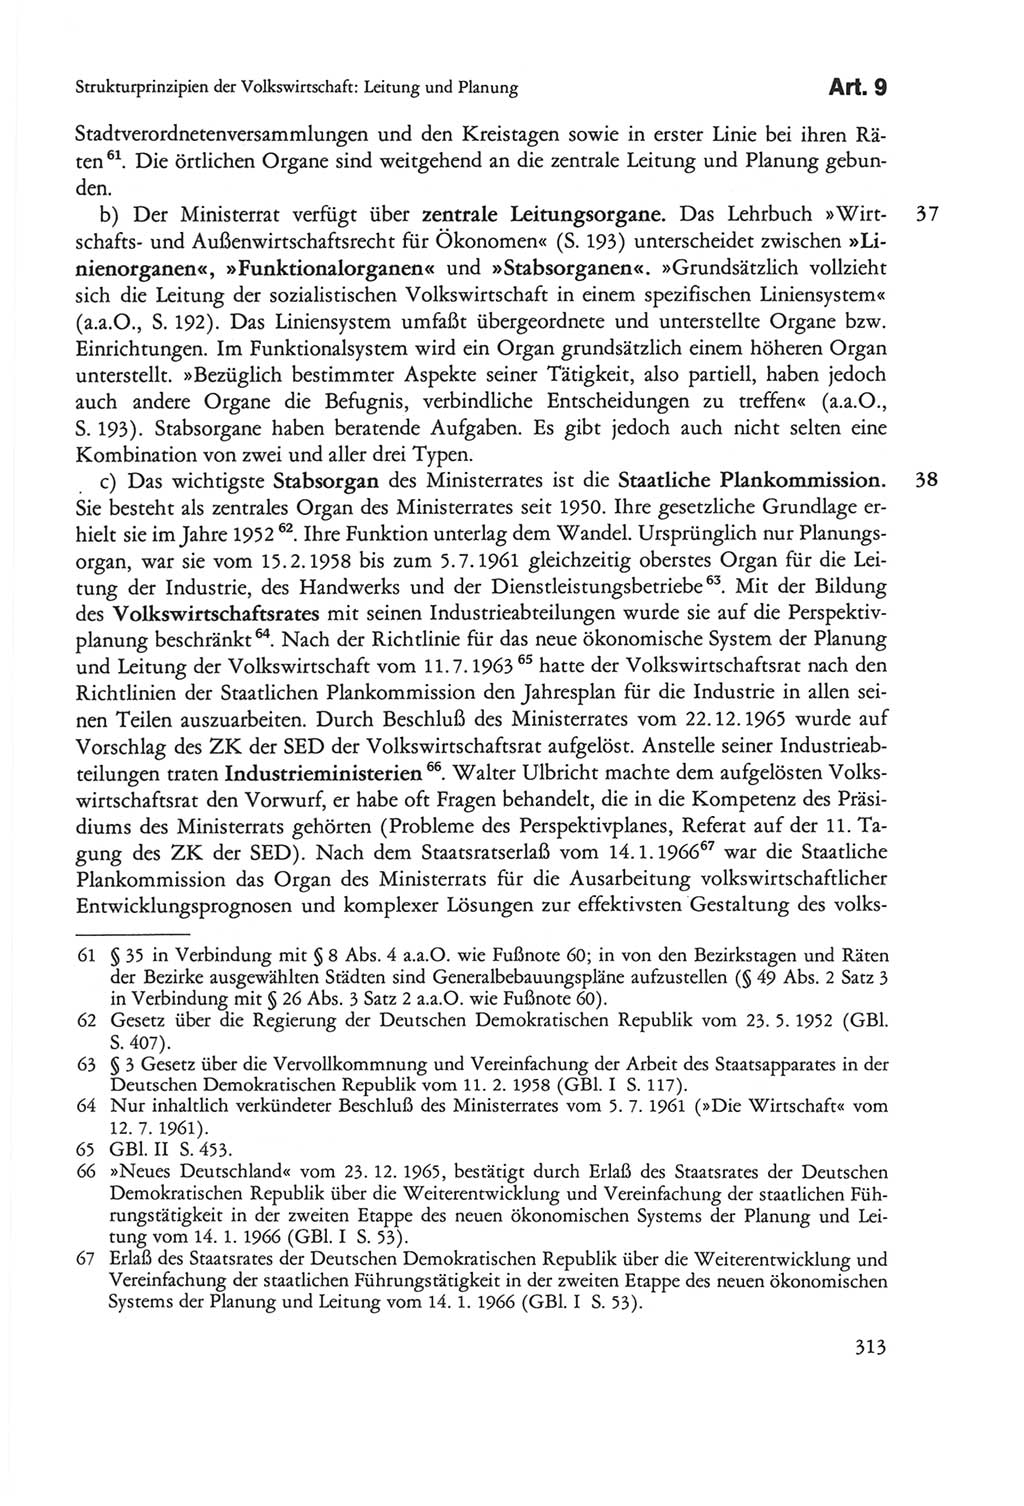 Die sozialistische Verfassung der Deutschen Demokratischen Republik (DDR), Kommentar 1982, Seite 313 (Soz. Verf. DDR Komm. 1982, S. 313)